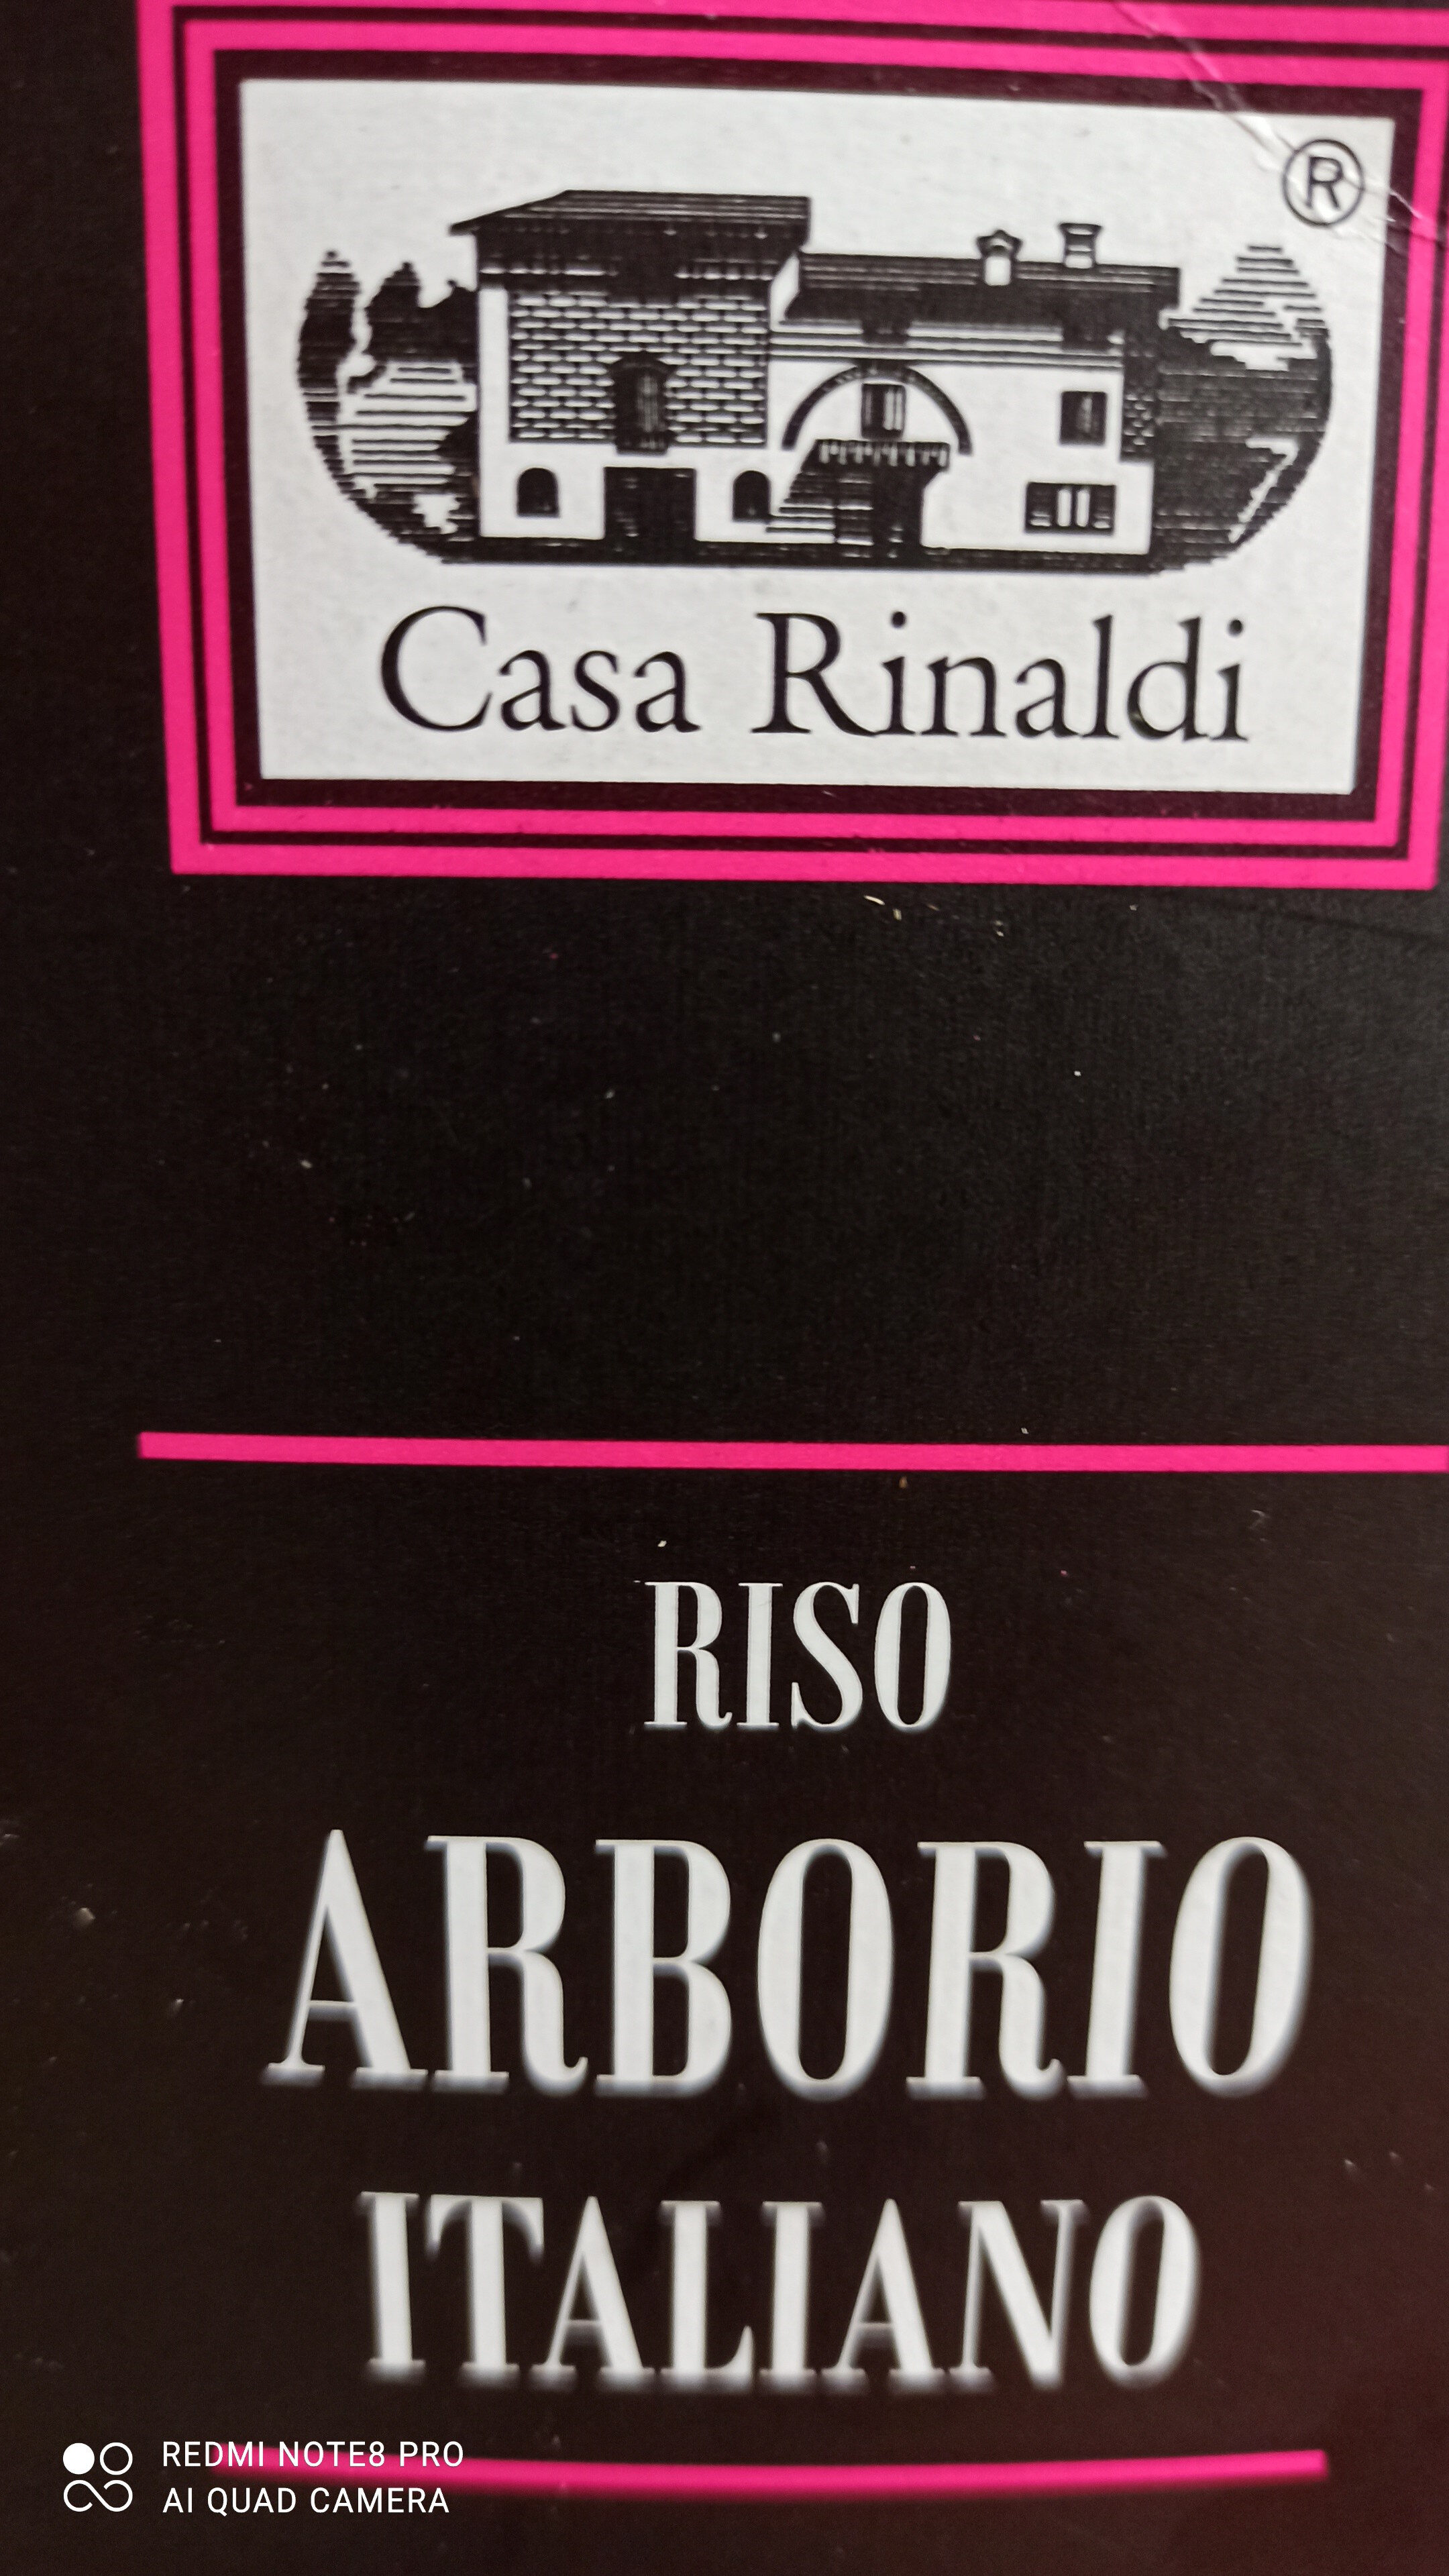 Casa Rinaldi Rice Arborio Italiano - Ingredients - it